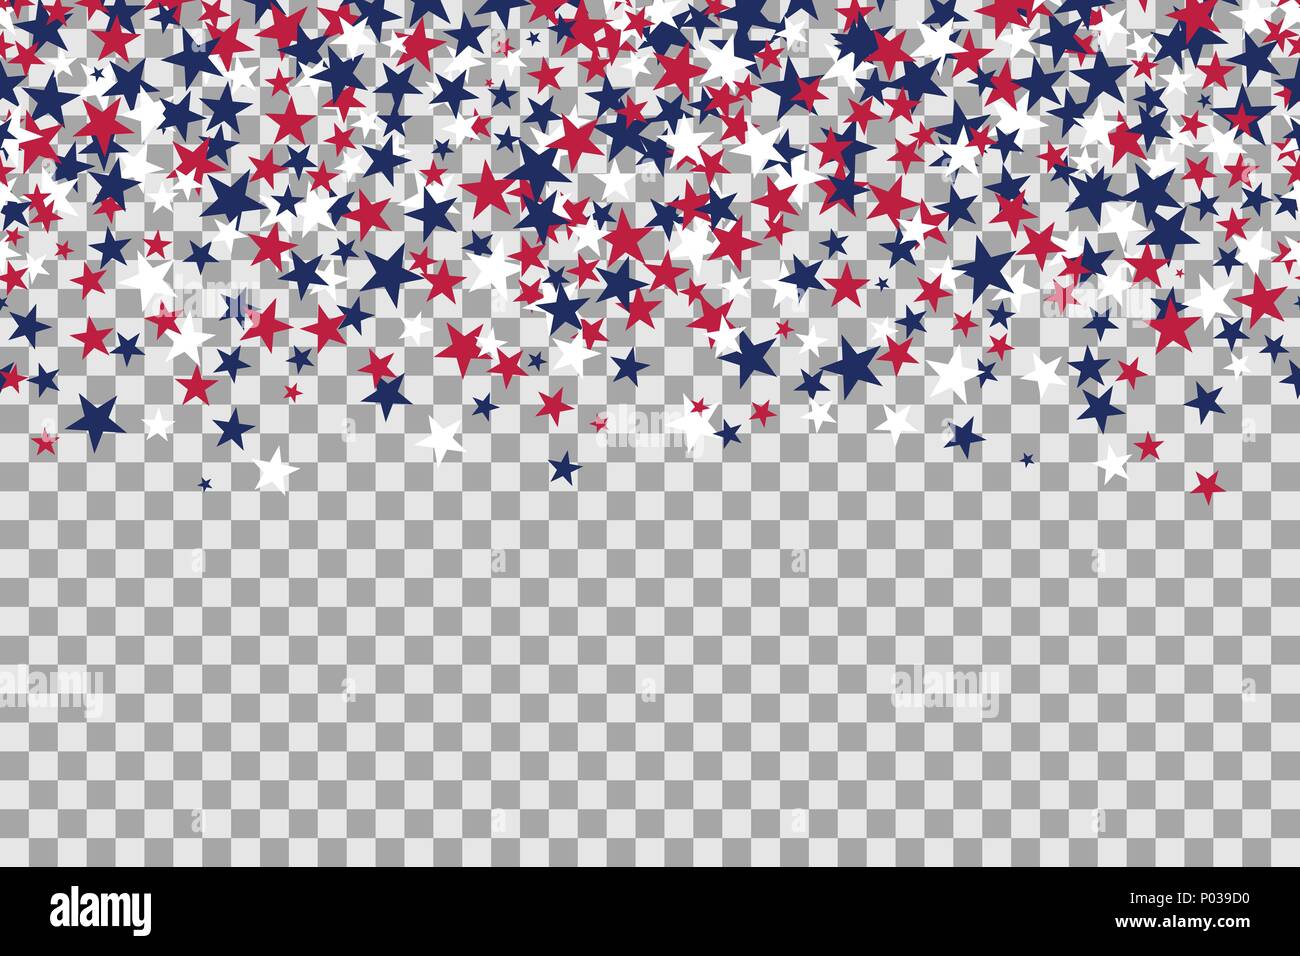 Nahtlose Muster mit Sterne für Memorial Day Feier auf transparenten Hintergrund. Vector Illustration. Stock Vektor